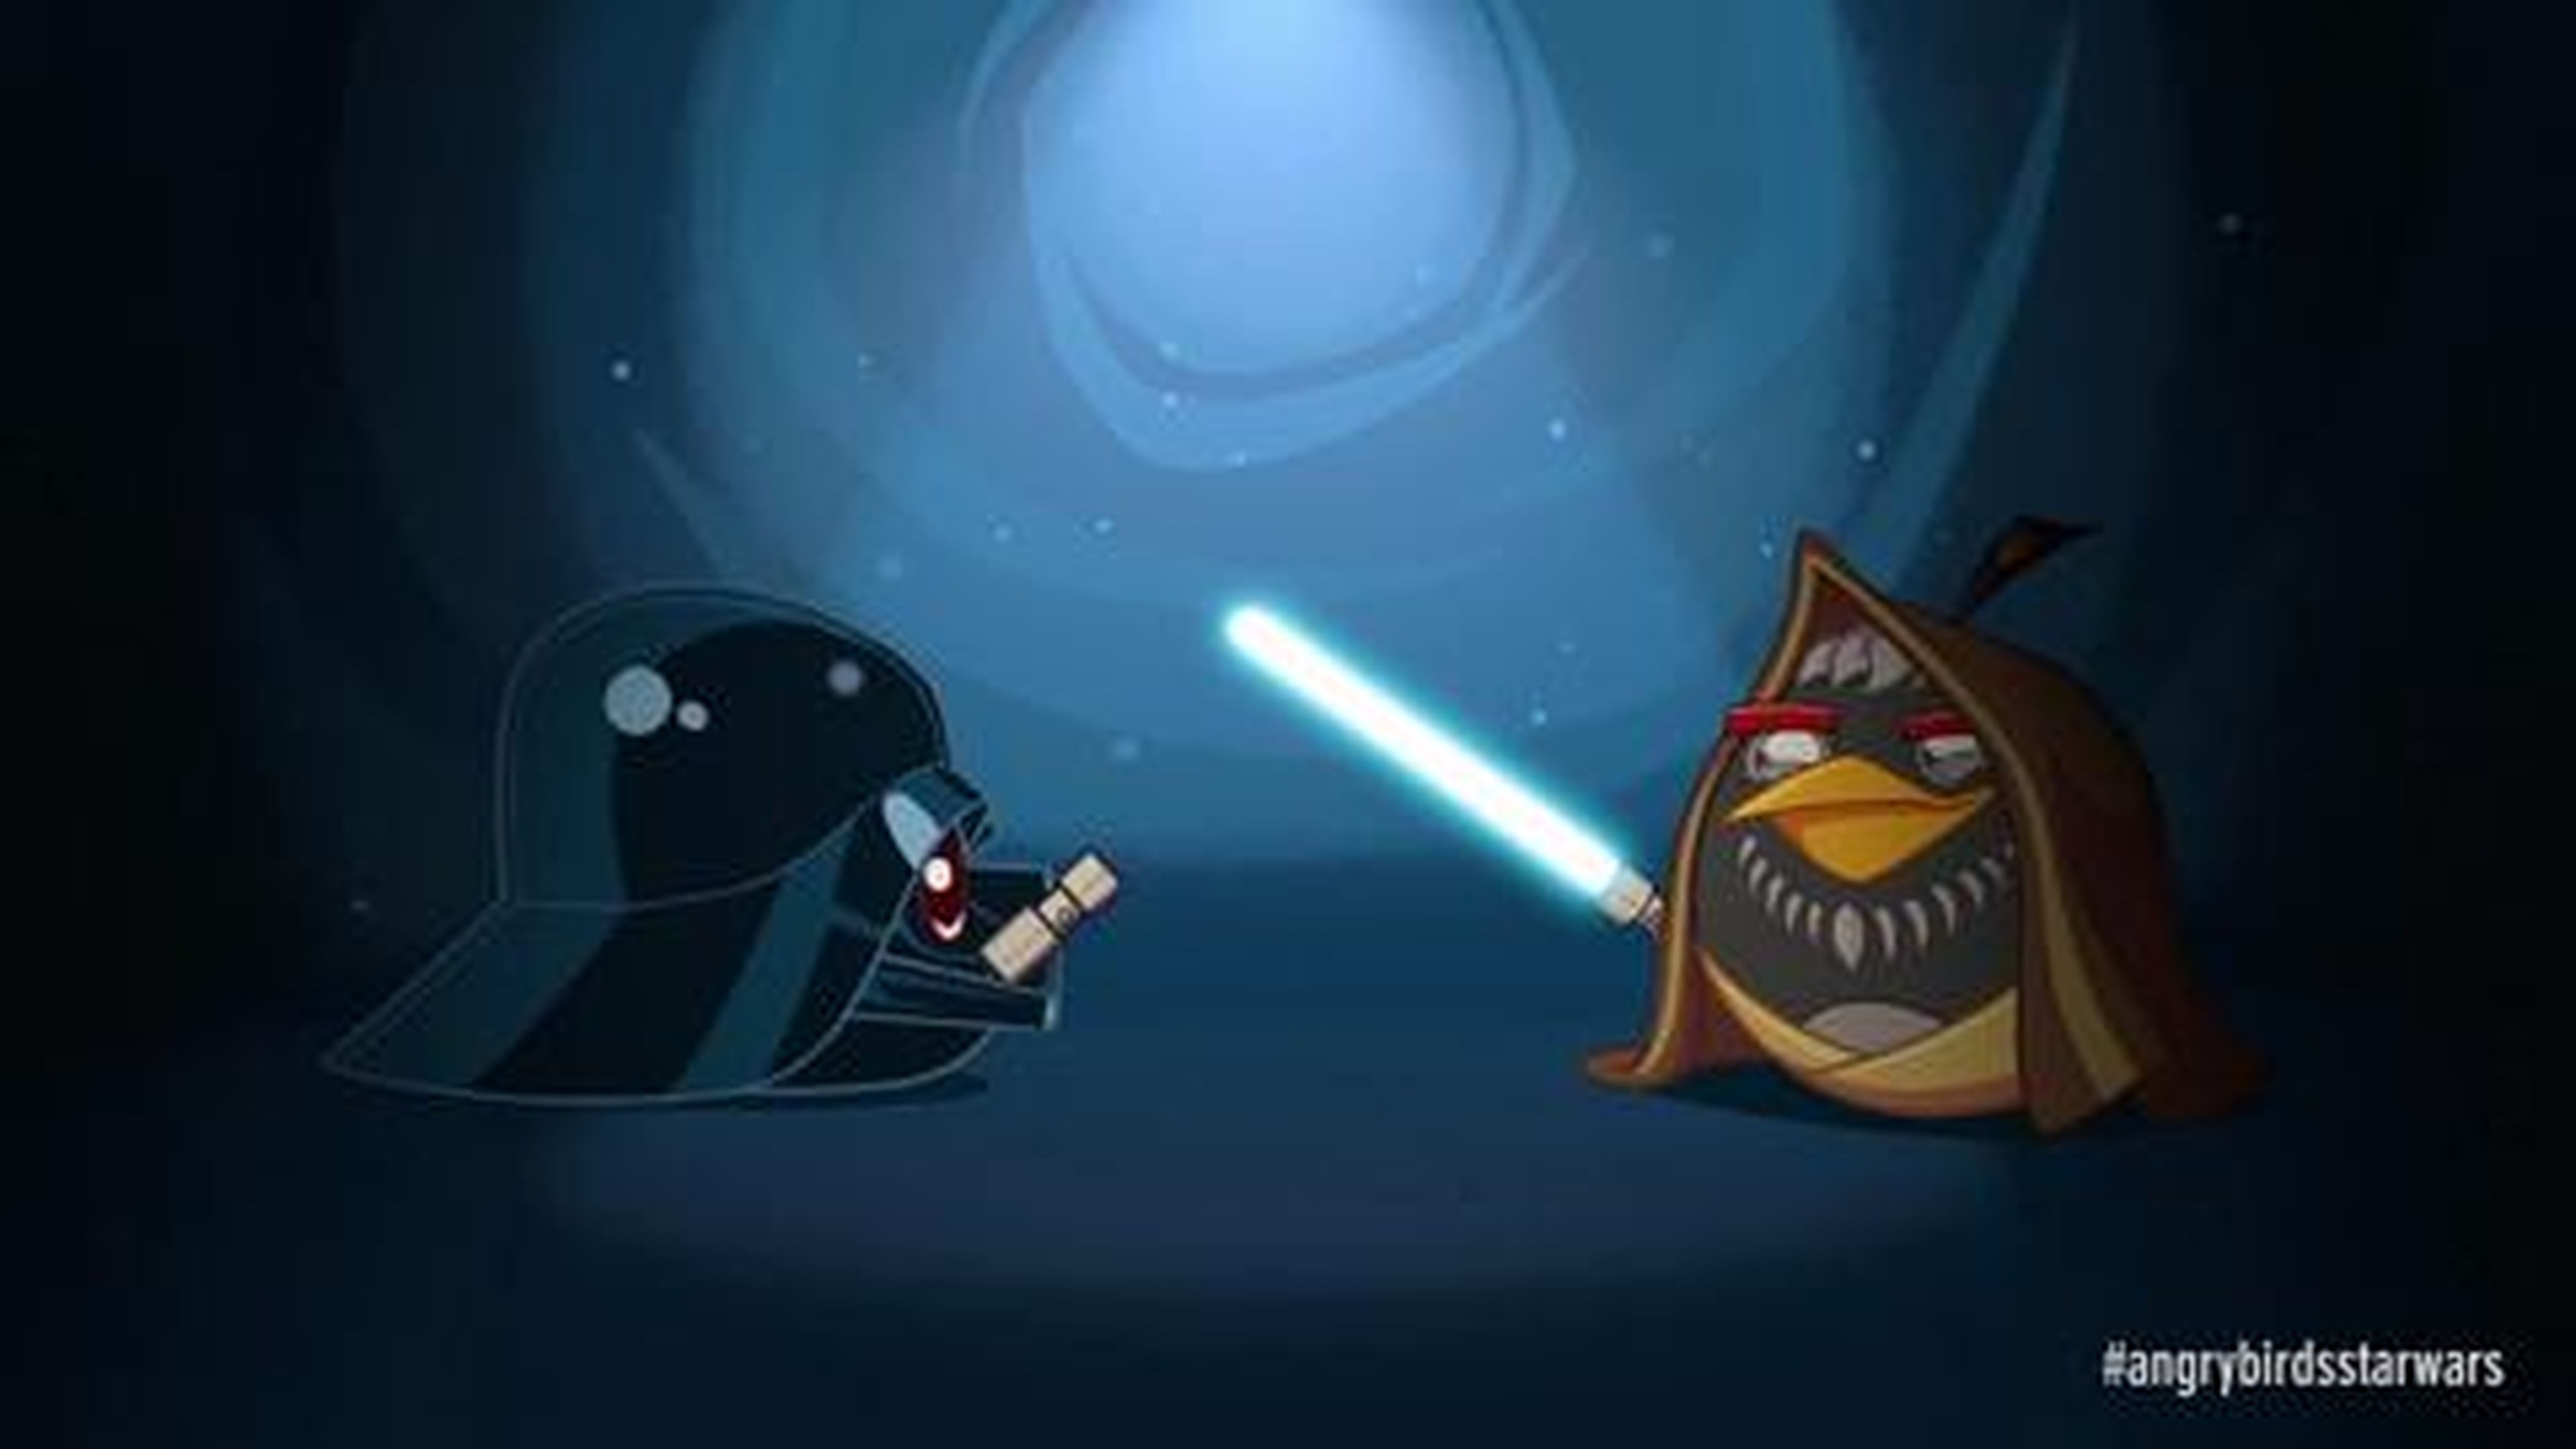 Obi-Wan Kenobi contra Darth Vader en Angry Birds Star Wars - HobbyConsolas.com